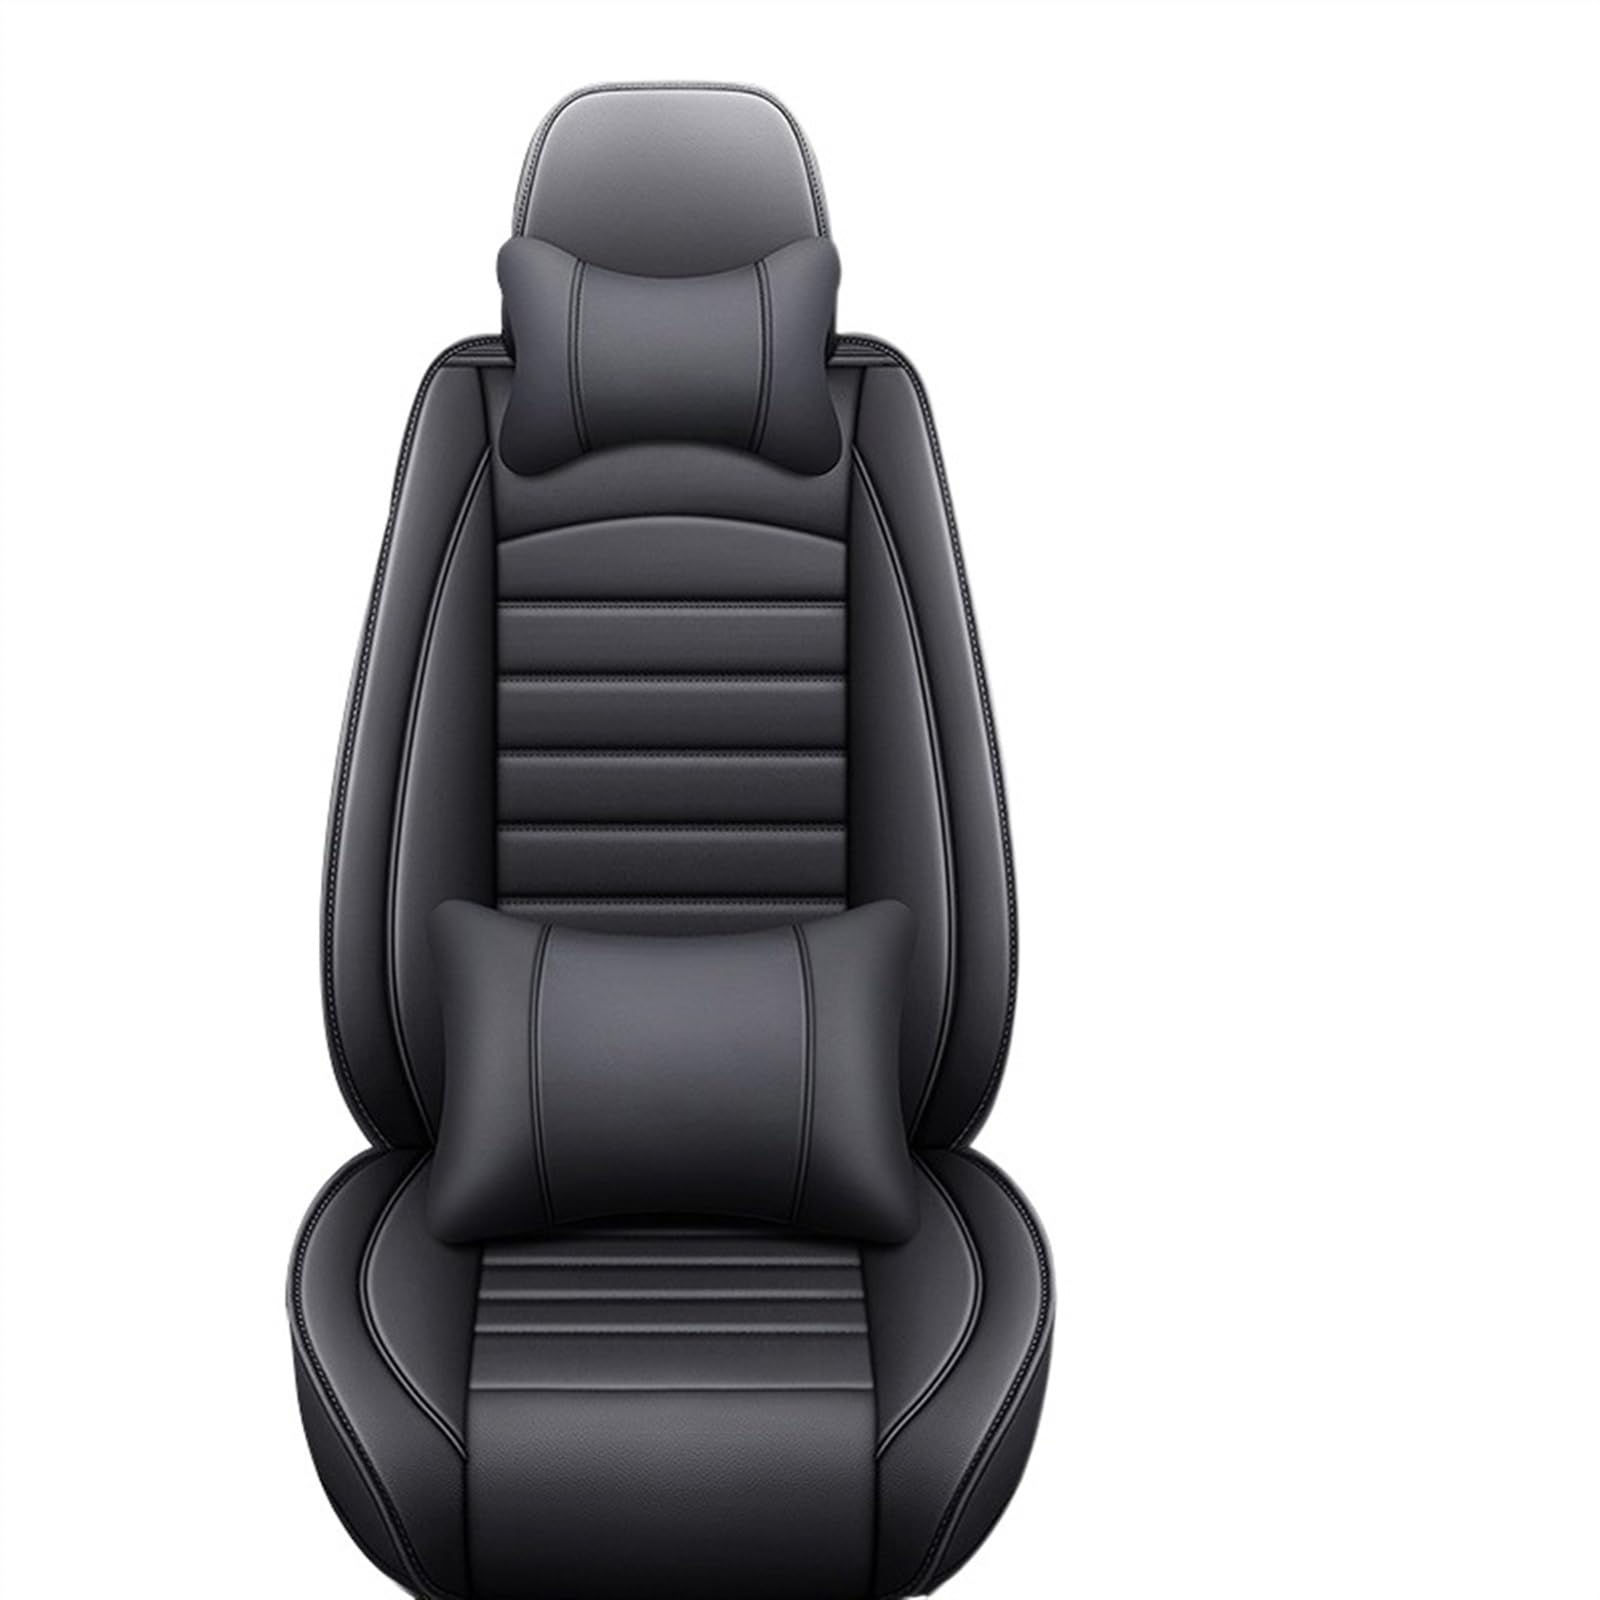 TATARENGS Automobilinnenraum Kompatibel Mit Q5 Q2 Q3 Q6 Q7 Q8 S1 S4 S5 S6 SQ5 RS3 RS4 RS5 Autositzbezug-Schutz, Waschbarer Vier-Jahreszeiten-Sitzbezug(with pillow,5) von TATARENGS